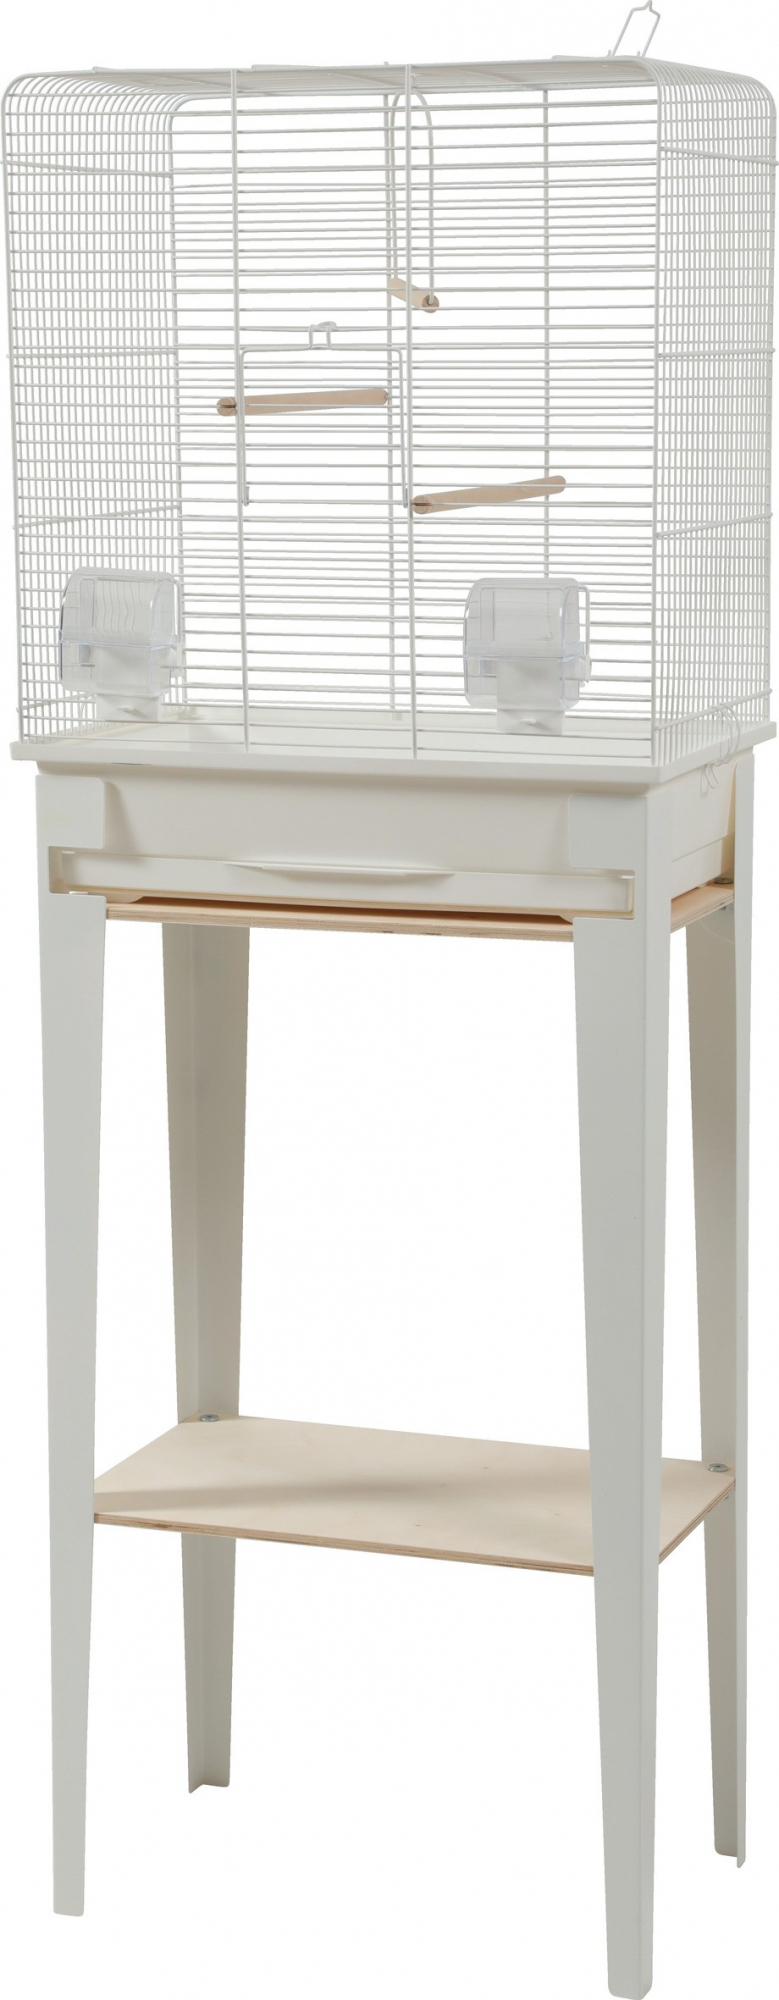 Jaula para pájaros con mueble Loft Blanco - 3 tamaños disponibles